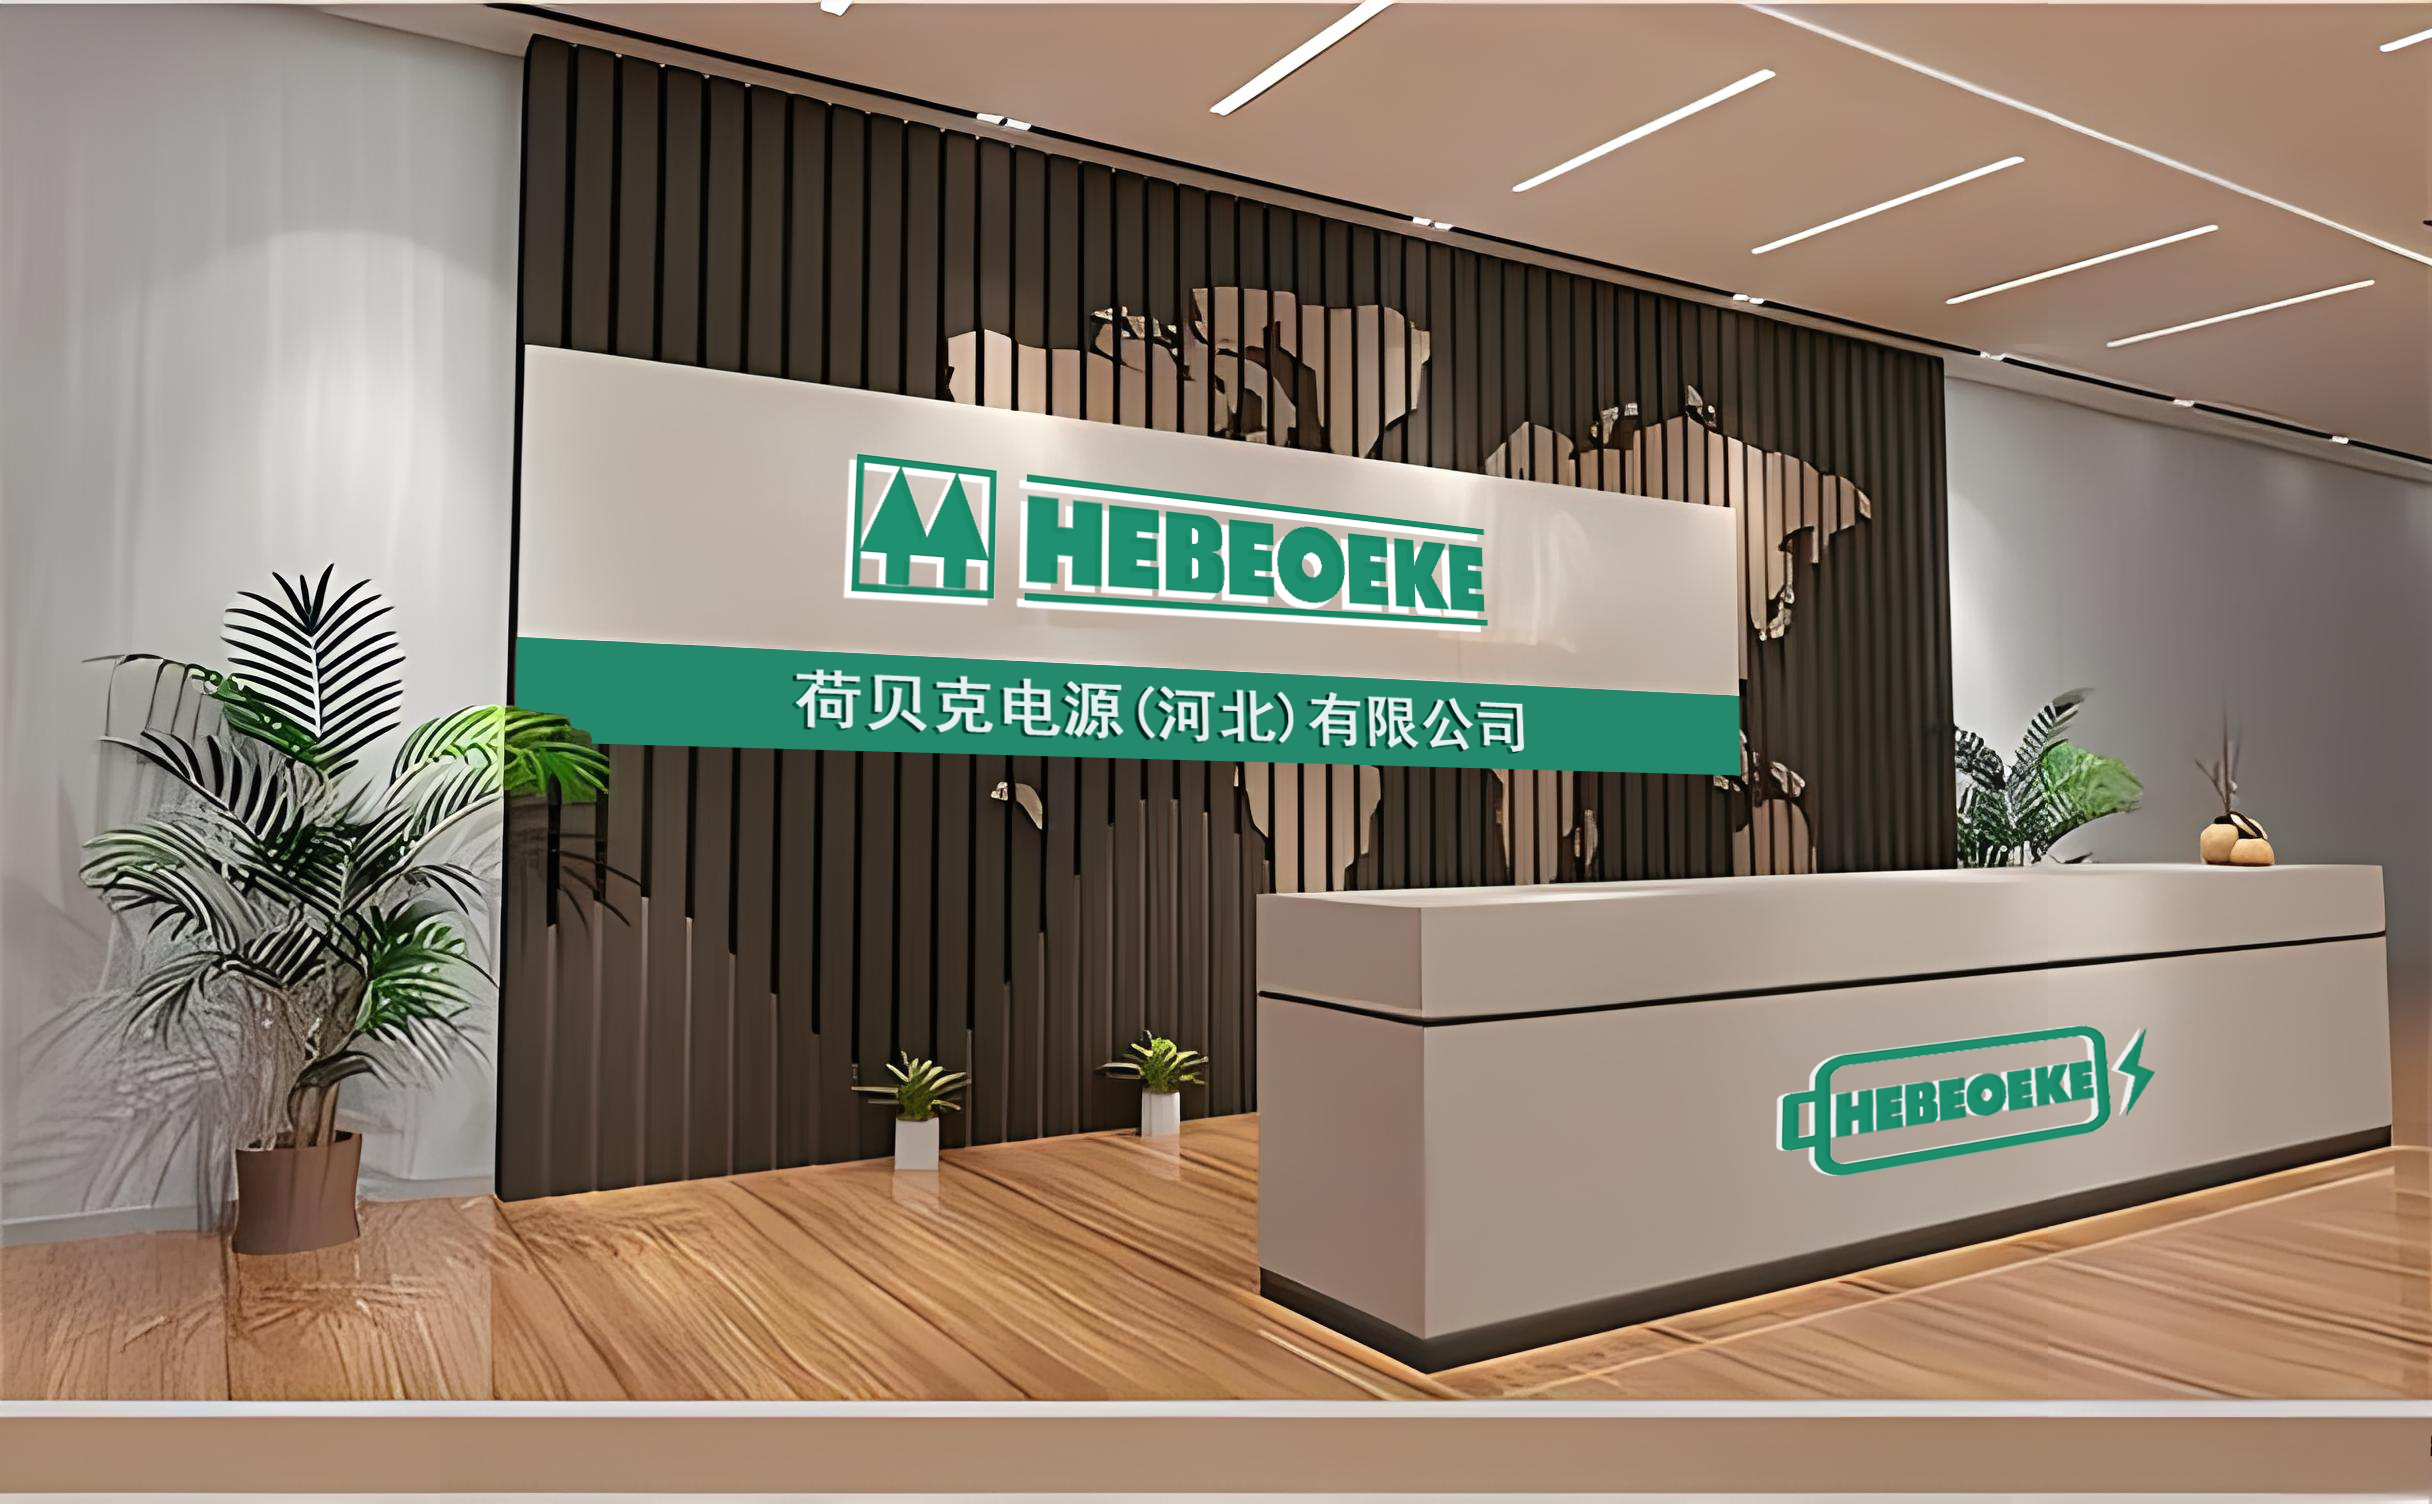 Hebeoeke Power (Hebei) Co., Ltd